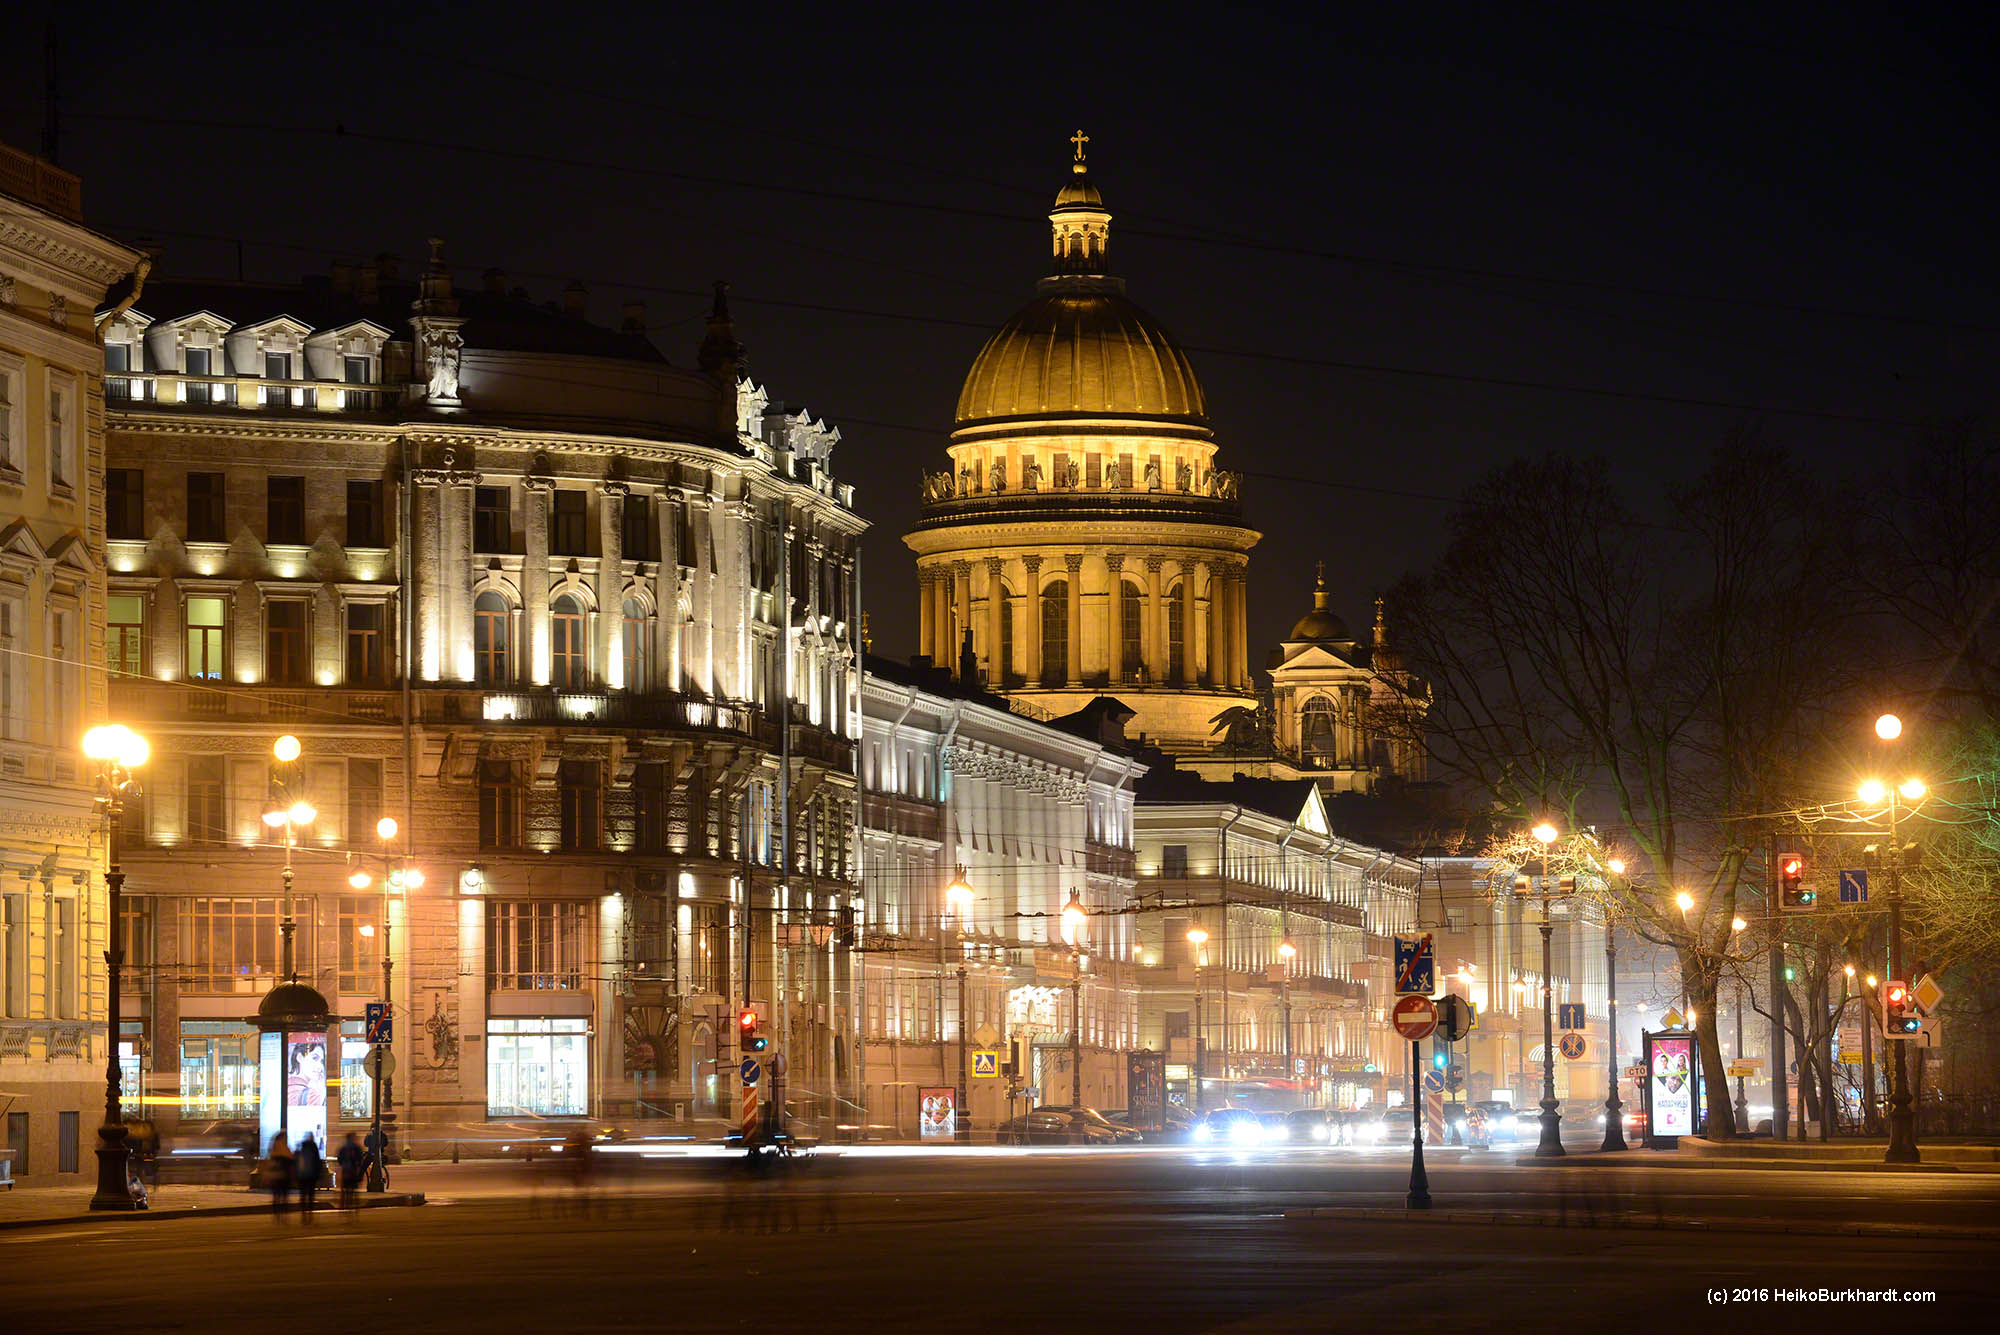 Isaakskathedrale St. Petersburg